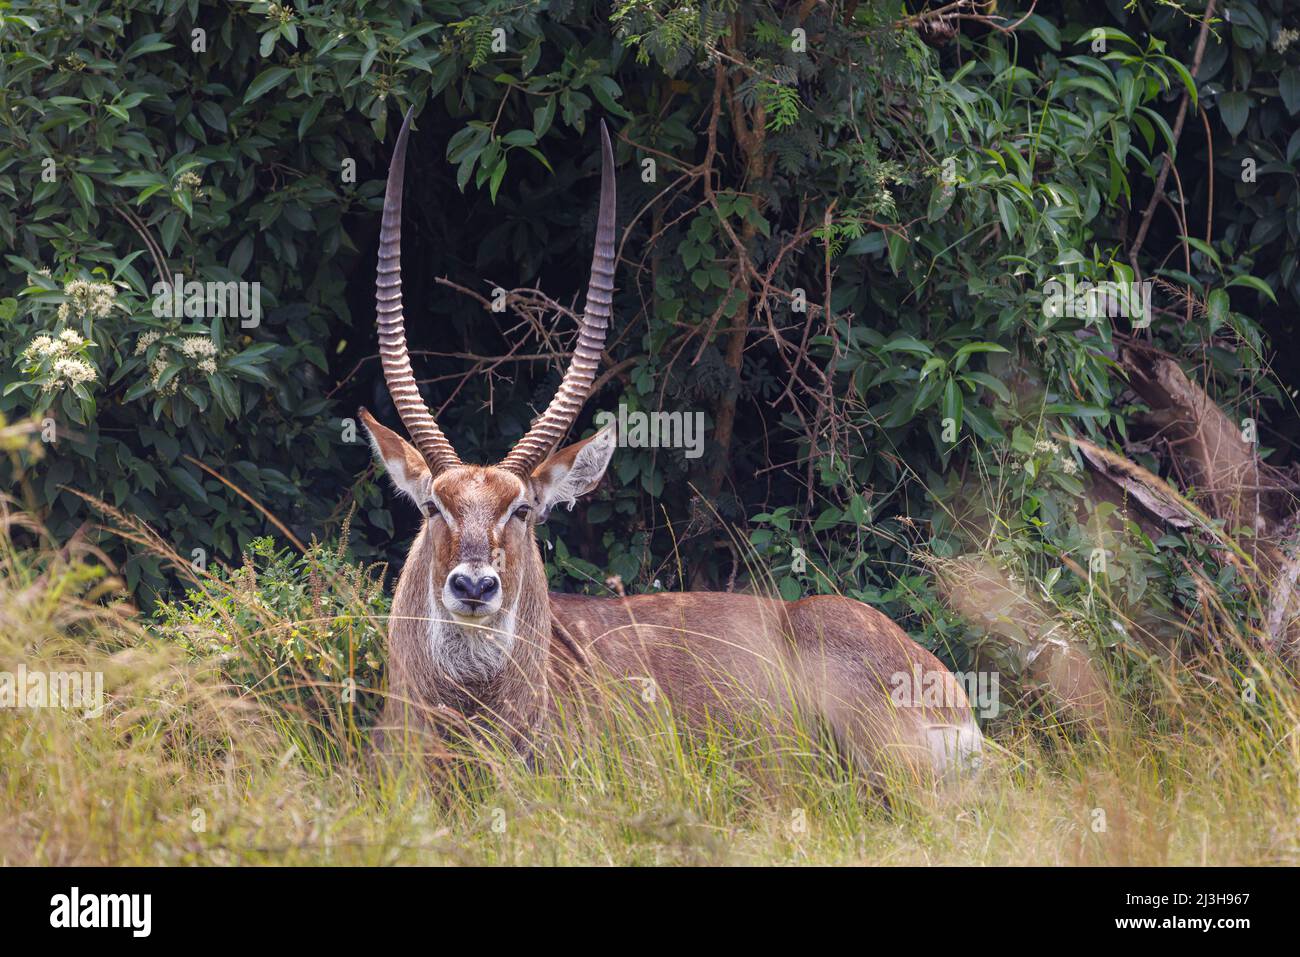 Uganda, Rubirizi district, Katunguru, Queen Elizabeth National Park, waterbuck Stock Photo